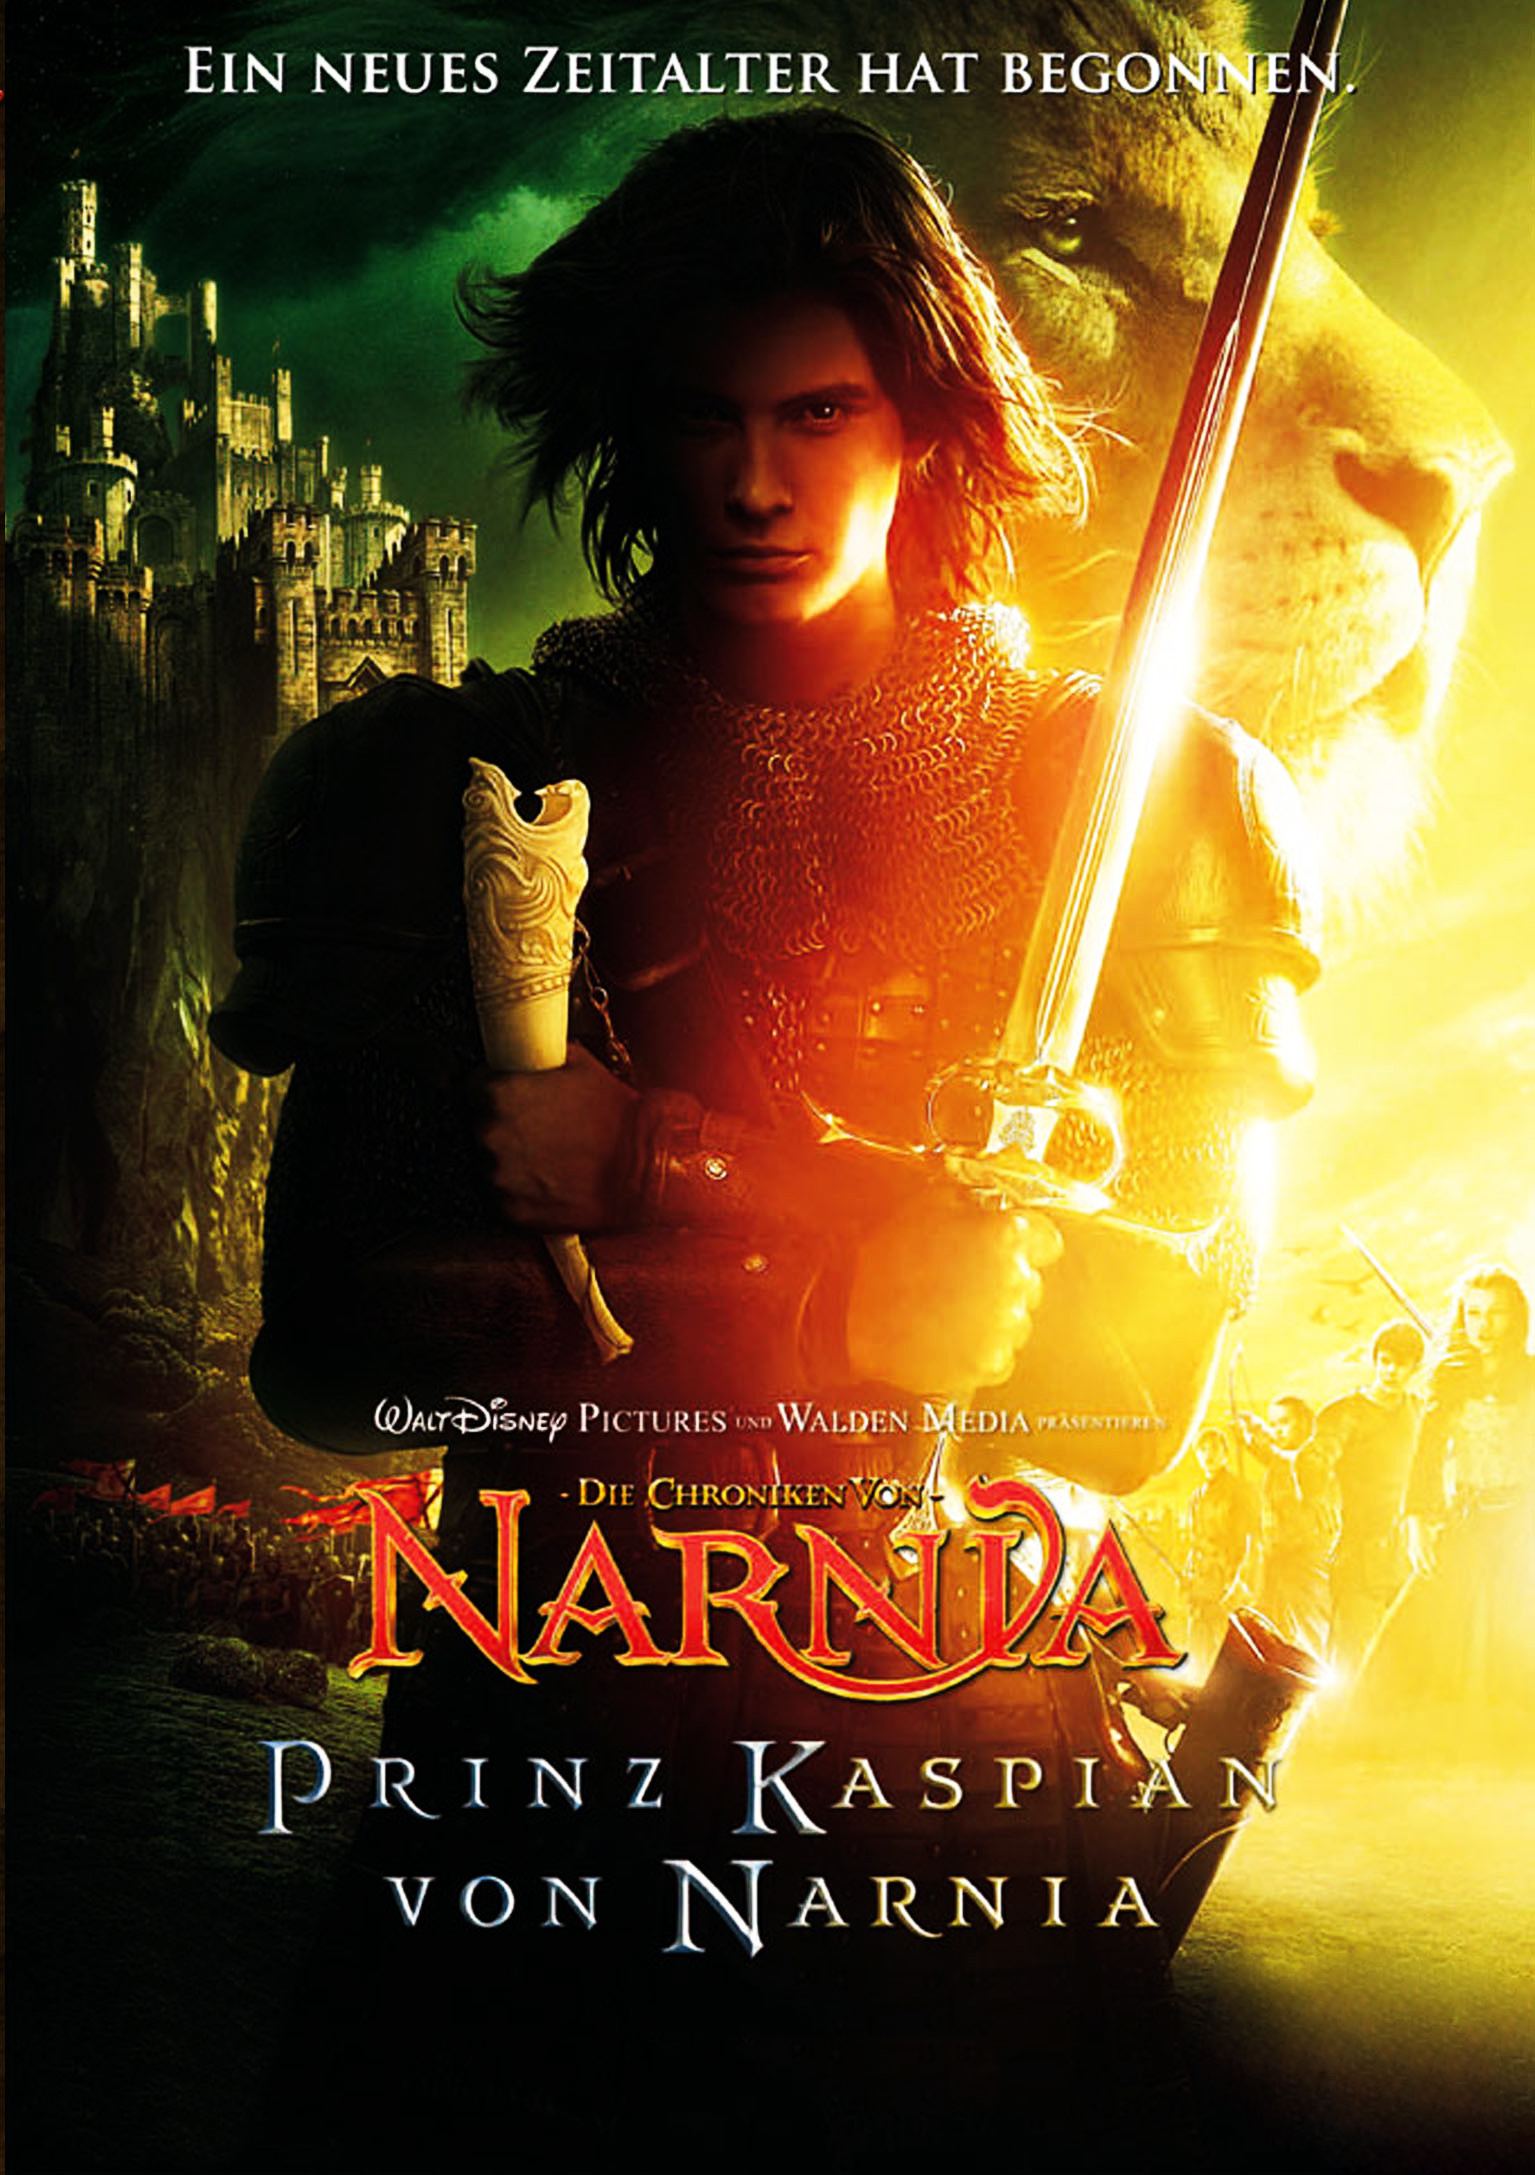 Plakat von "Die Chroniken von Narnia: Prinz Kaspian von Narnia"